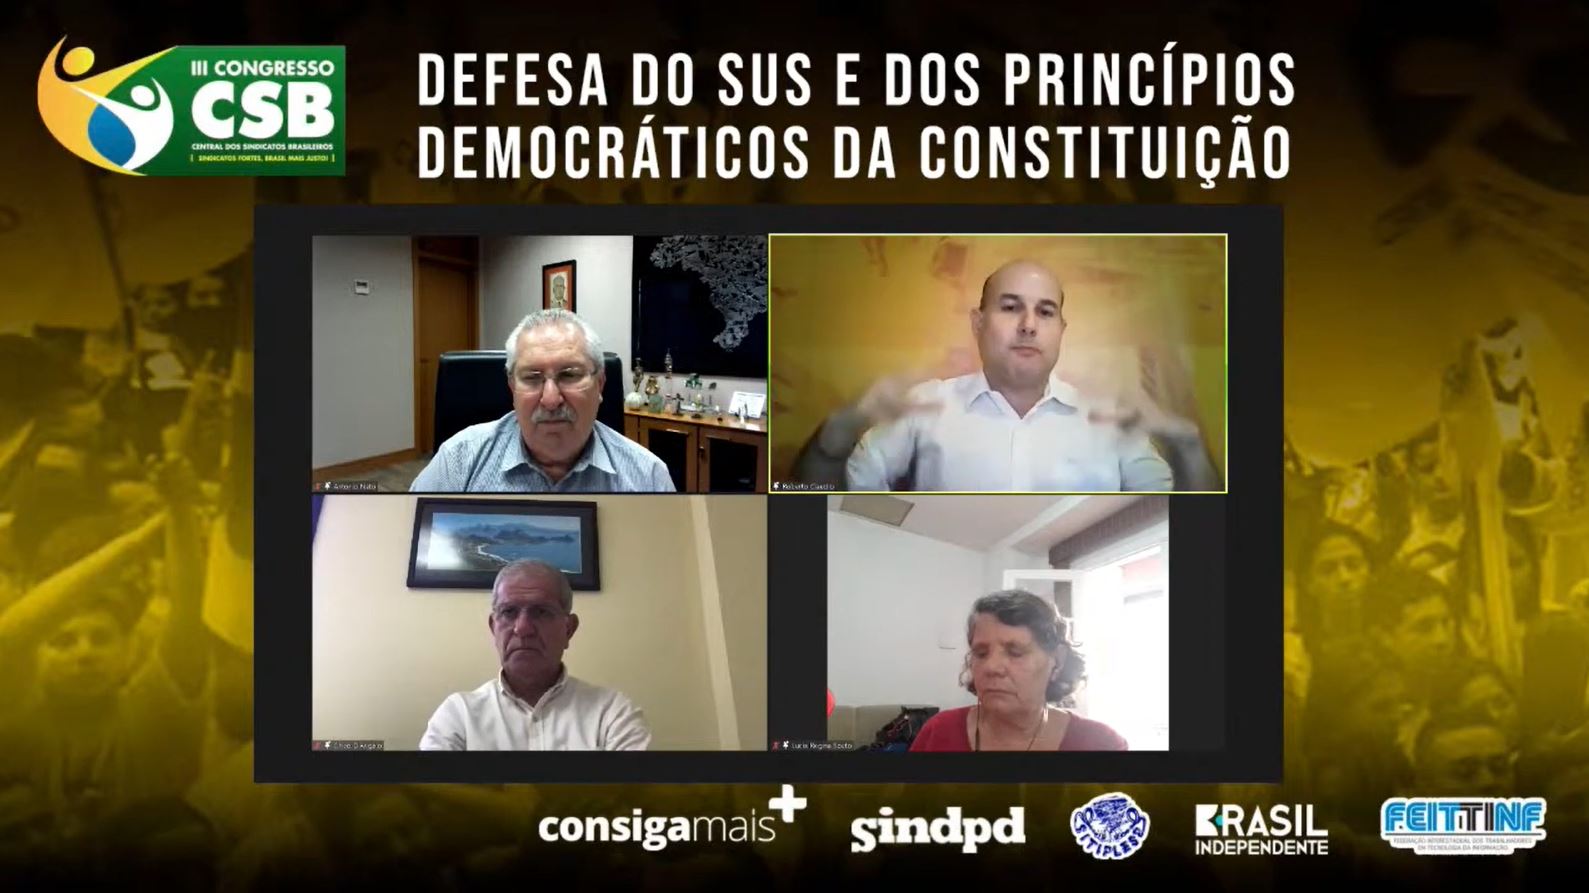 Defesa do SUS e dos princípios democráticos da Constituição foi tema de seminário da CSB